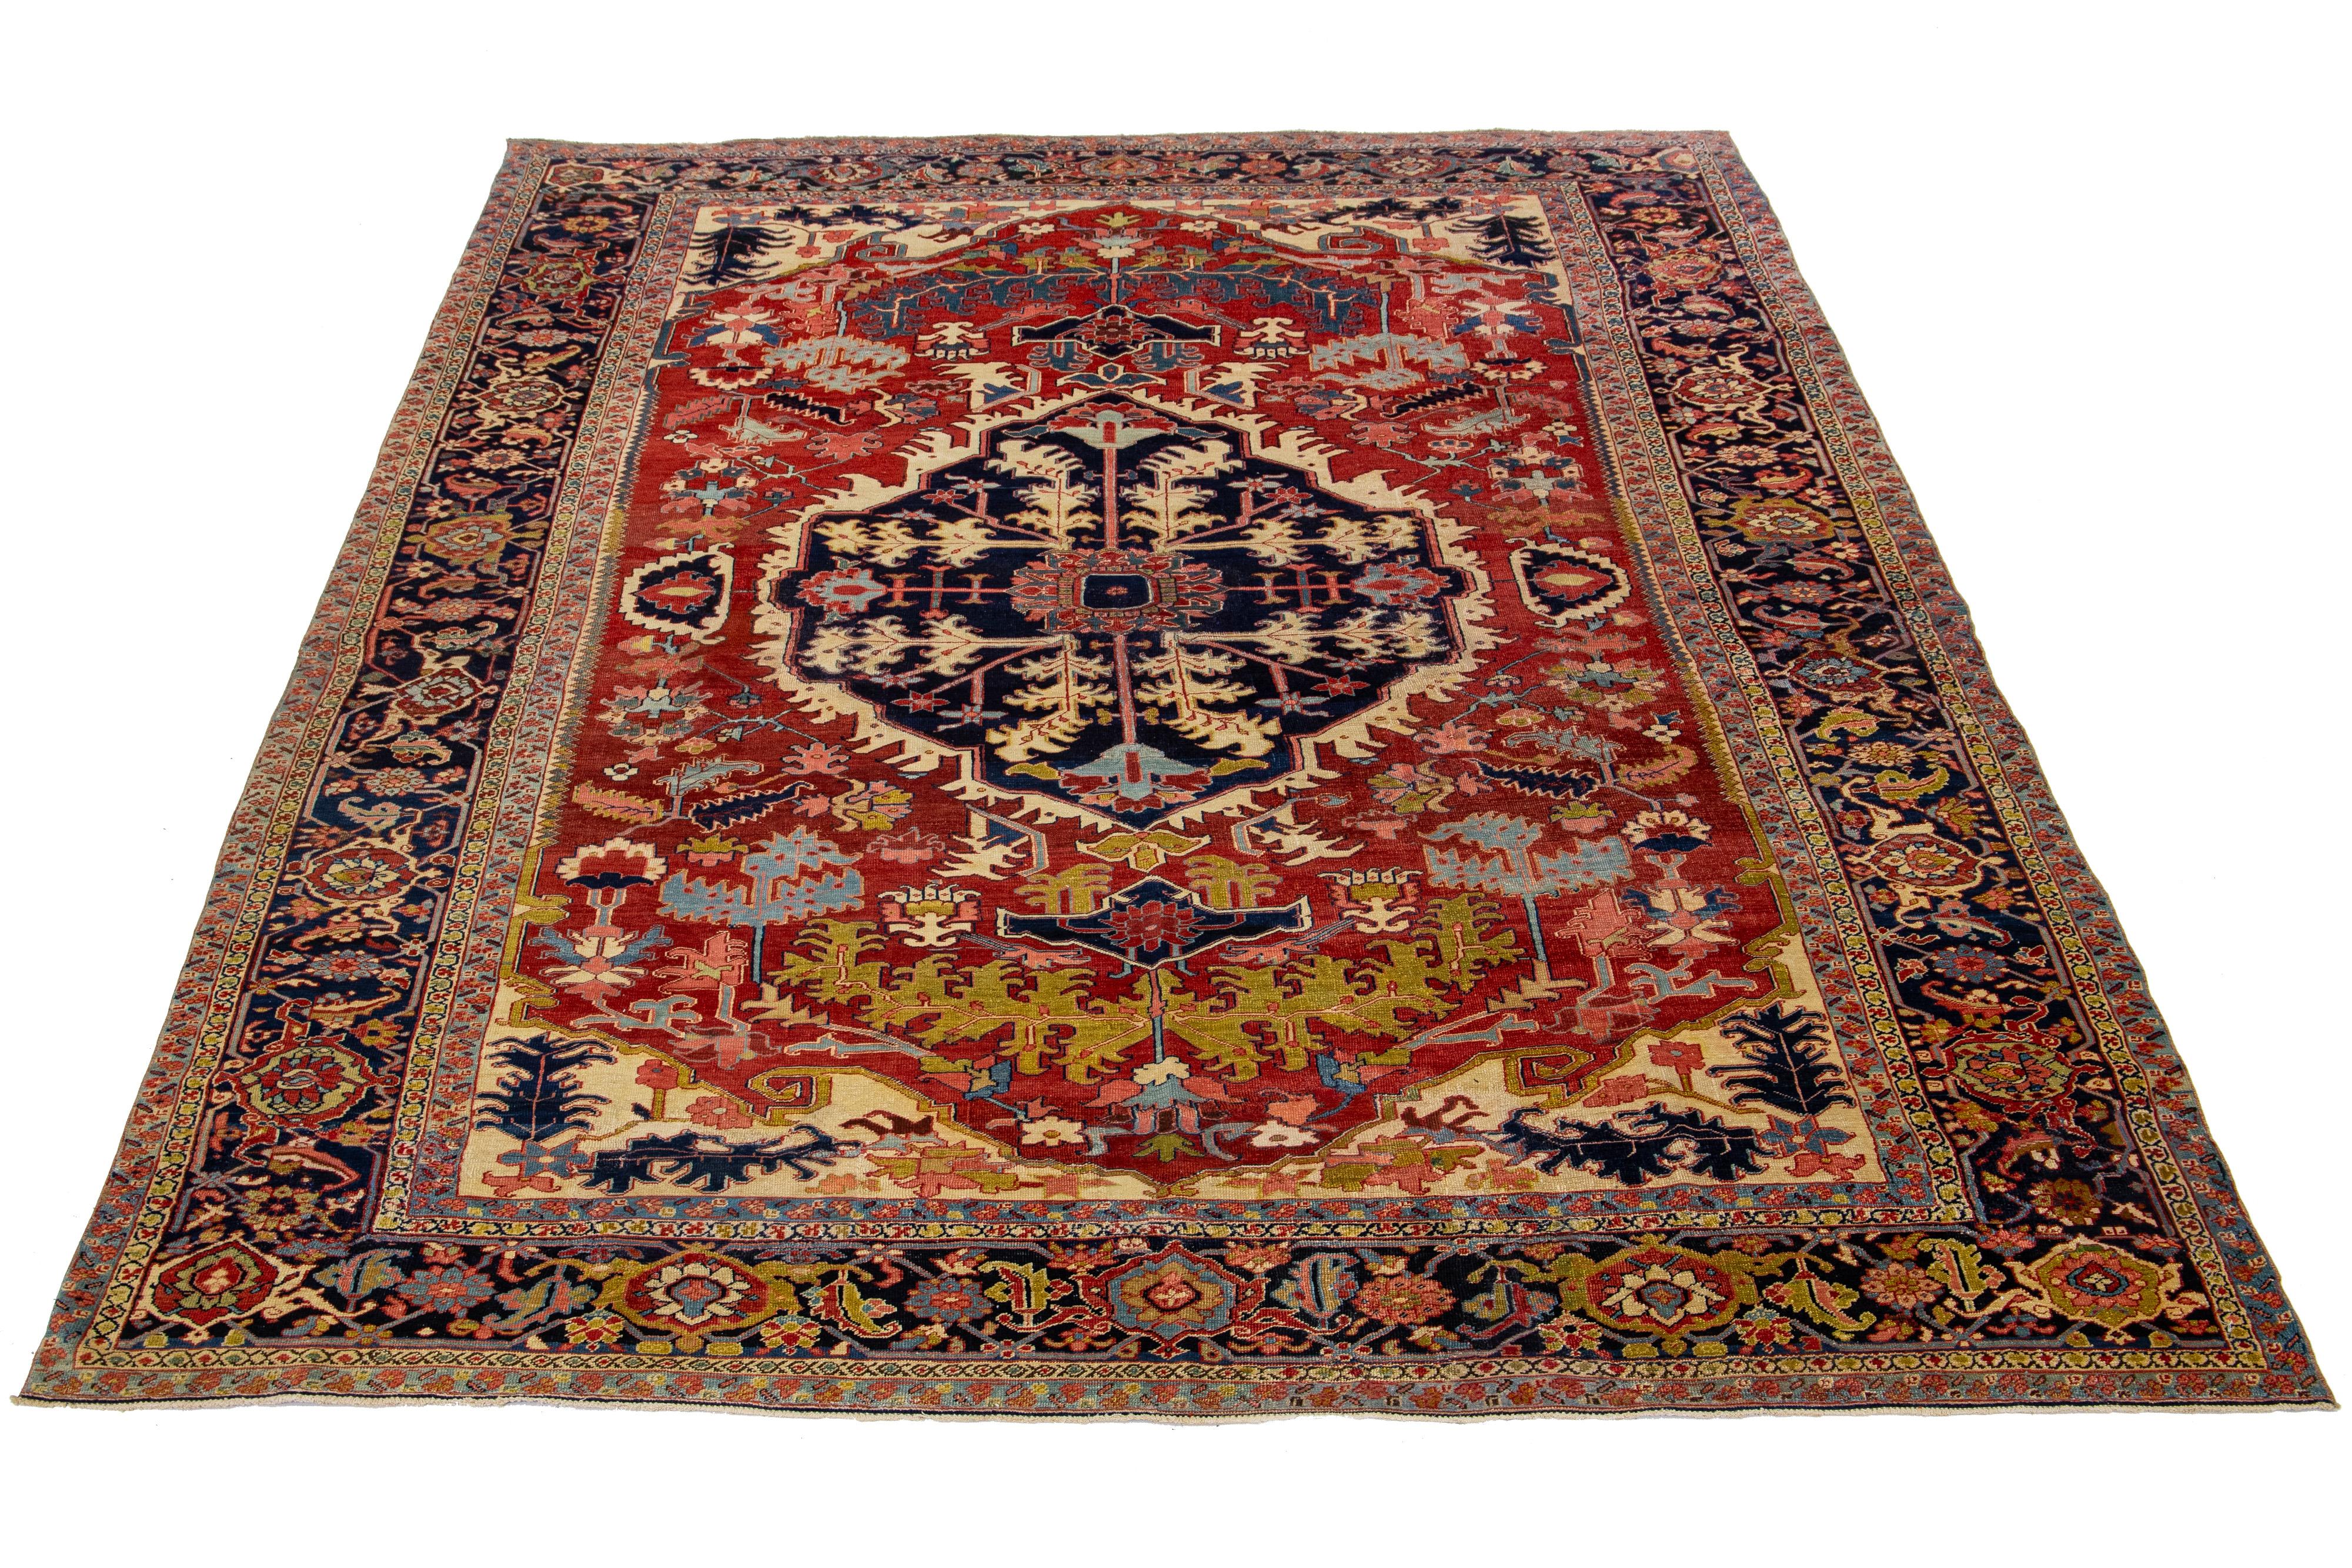 Dieser antike persische Heriz-Teppich ist aus handgeknüpfter Wolle gefertigt. Das rote Feld zeigt ein fesselndes Medaillonmuster, das mit verschiedenen Farbschattierungen verziert ist.

Dieser Teppich misst 9'3